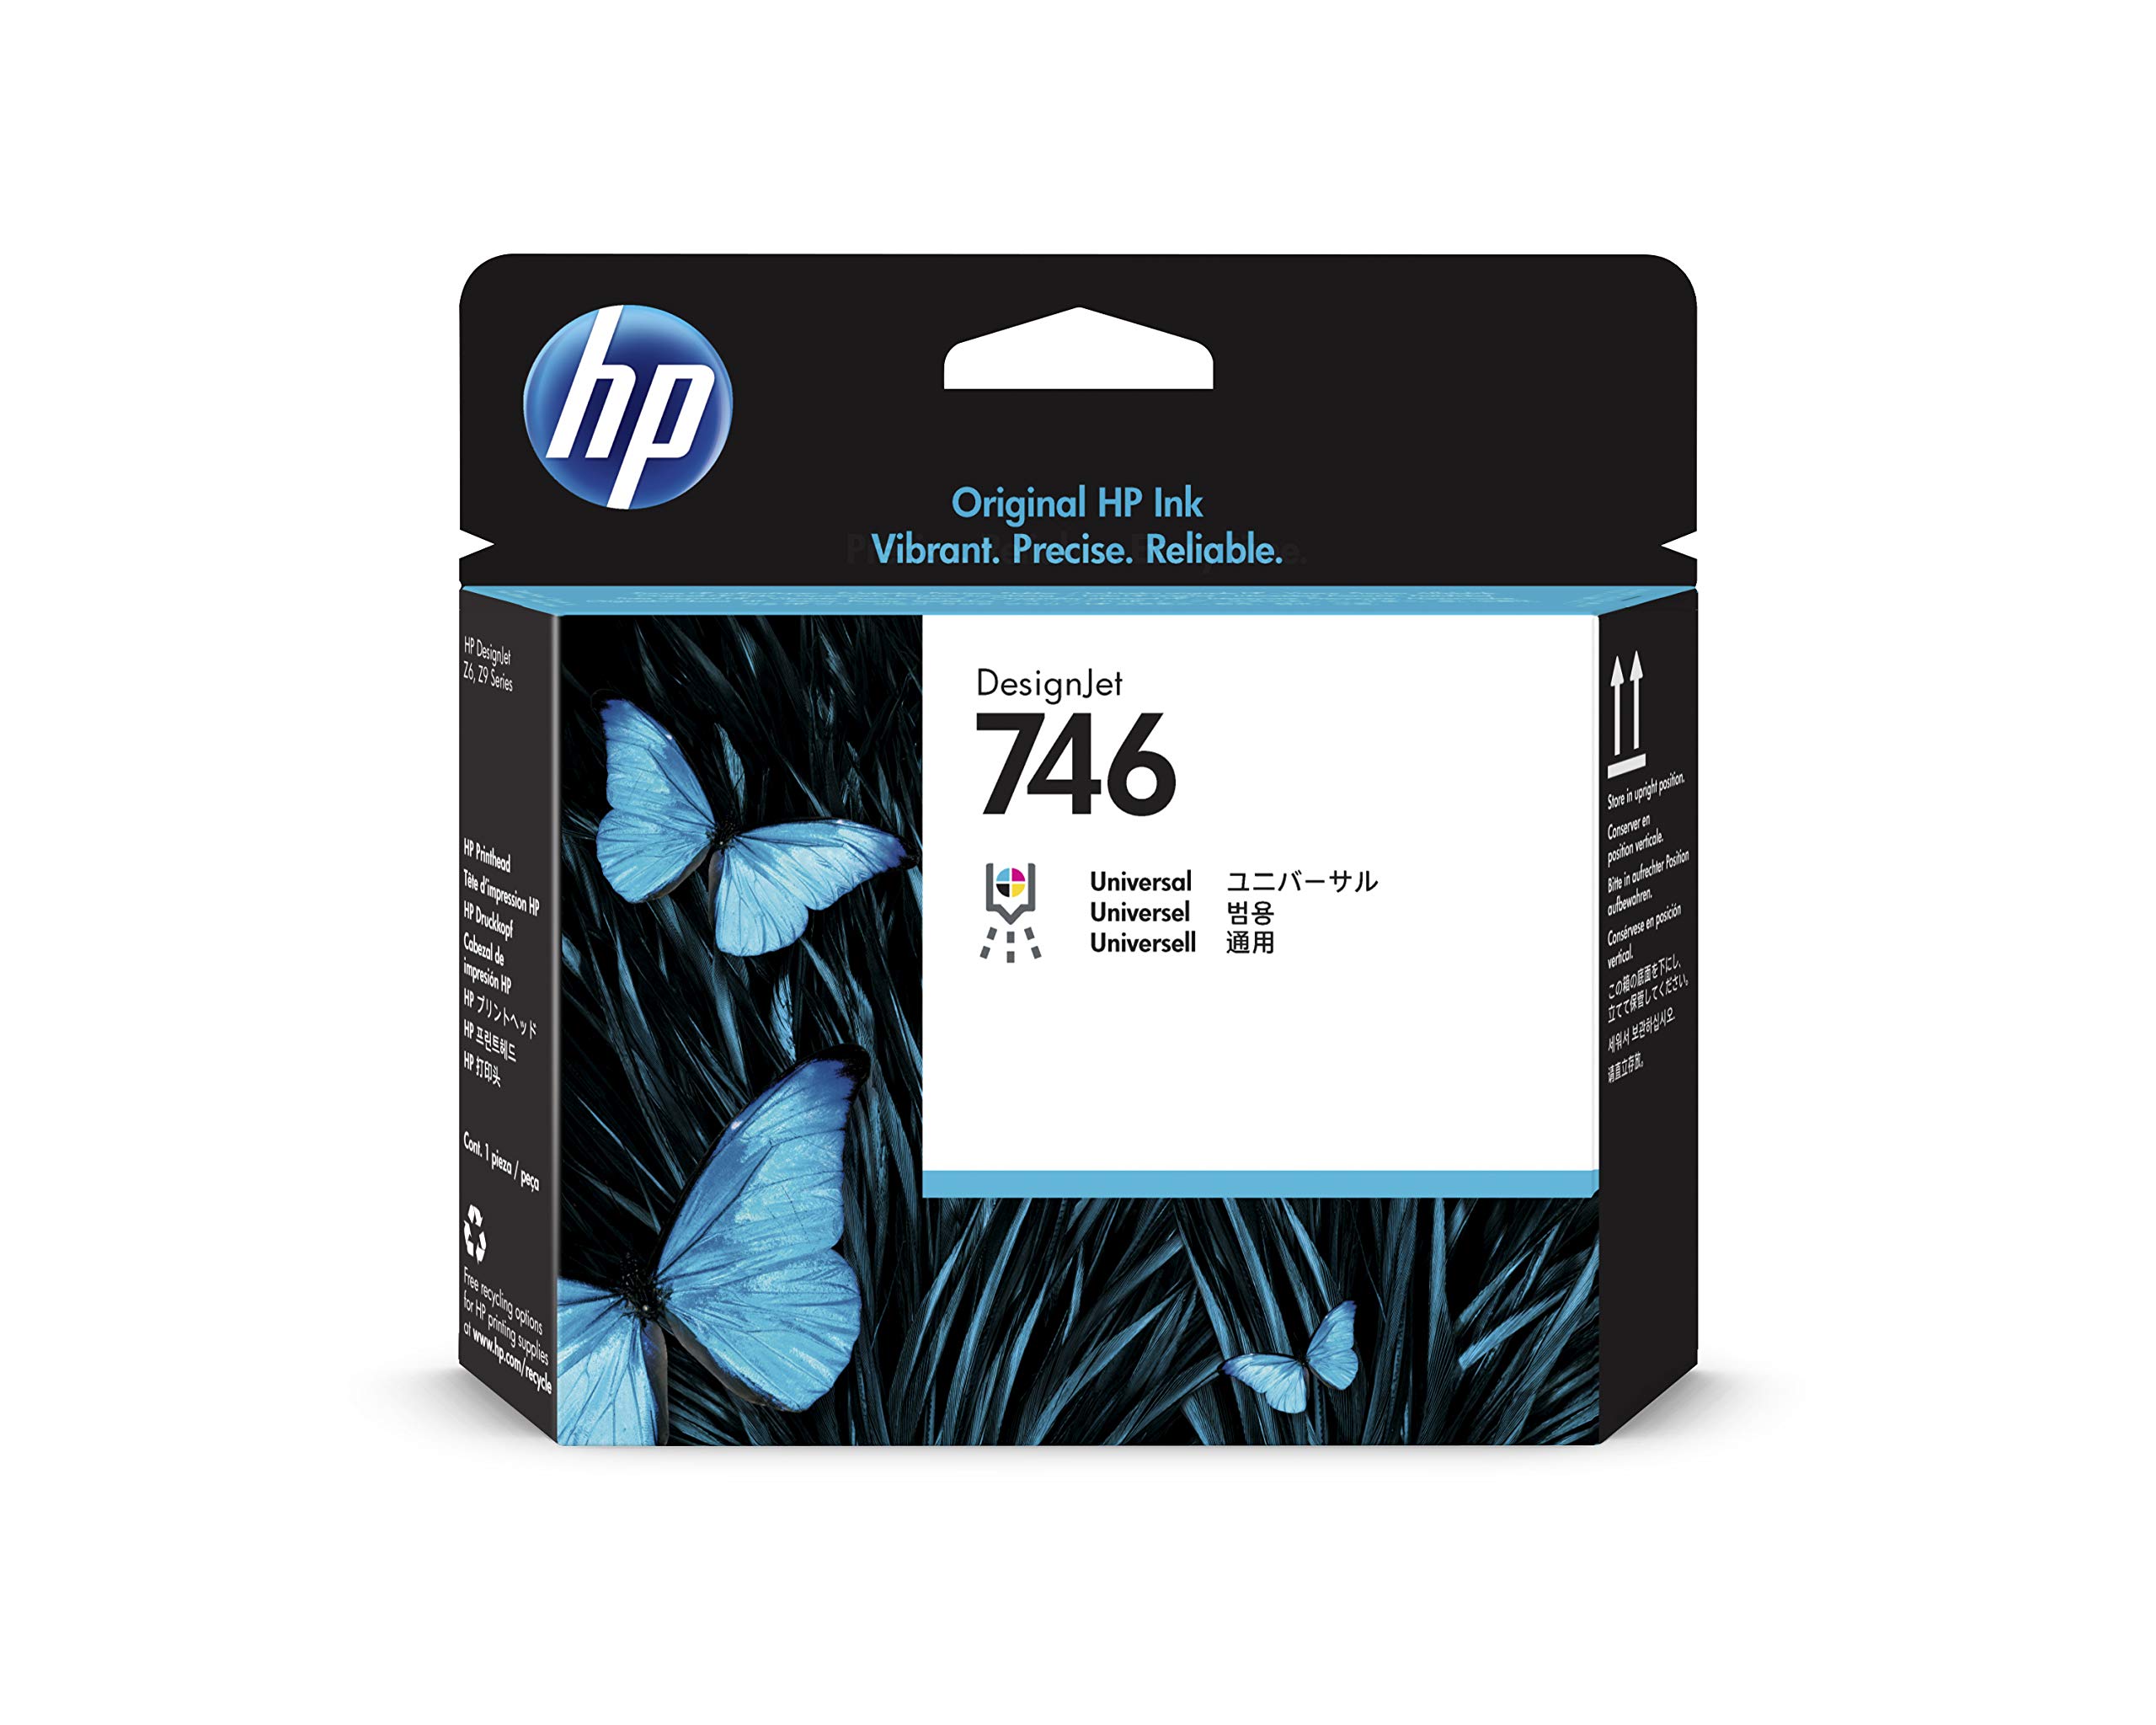 HP Tête d'impression DesignJet 746 (P2V25A) pour imprim...